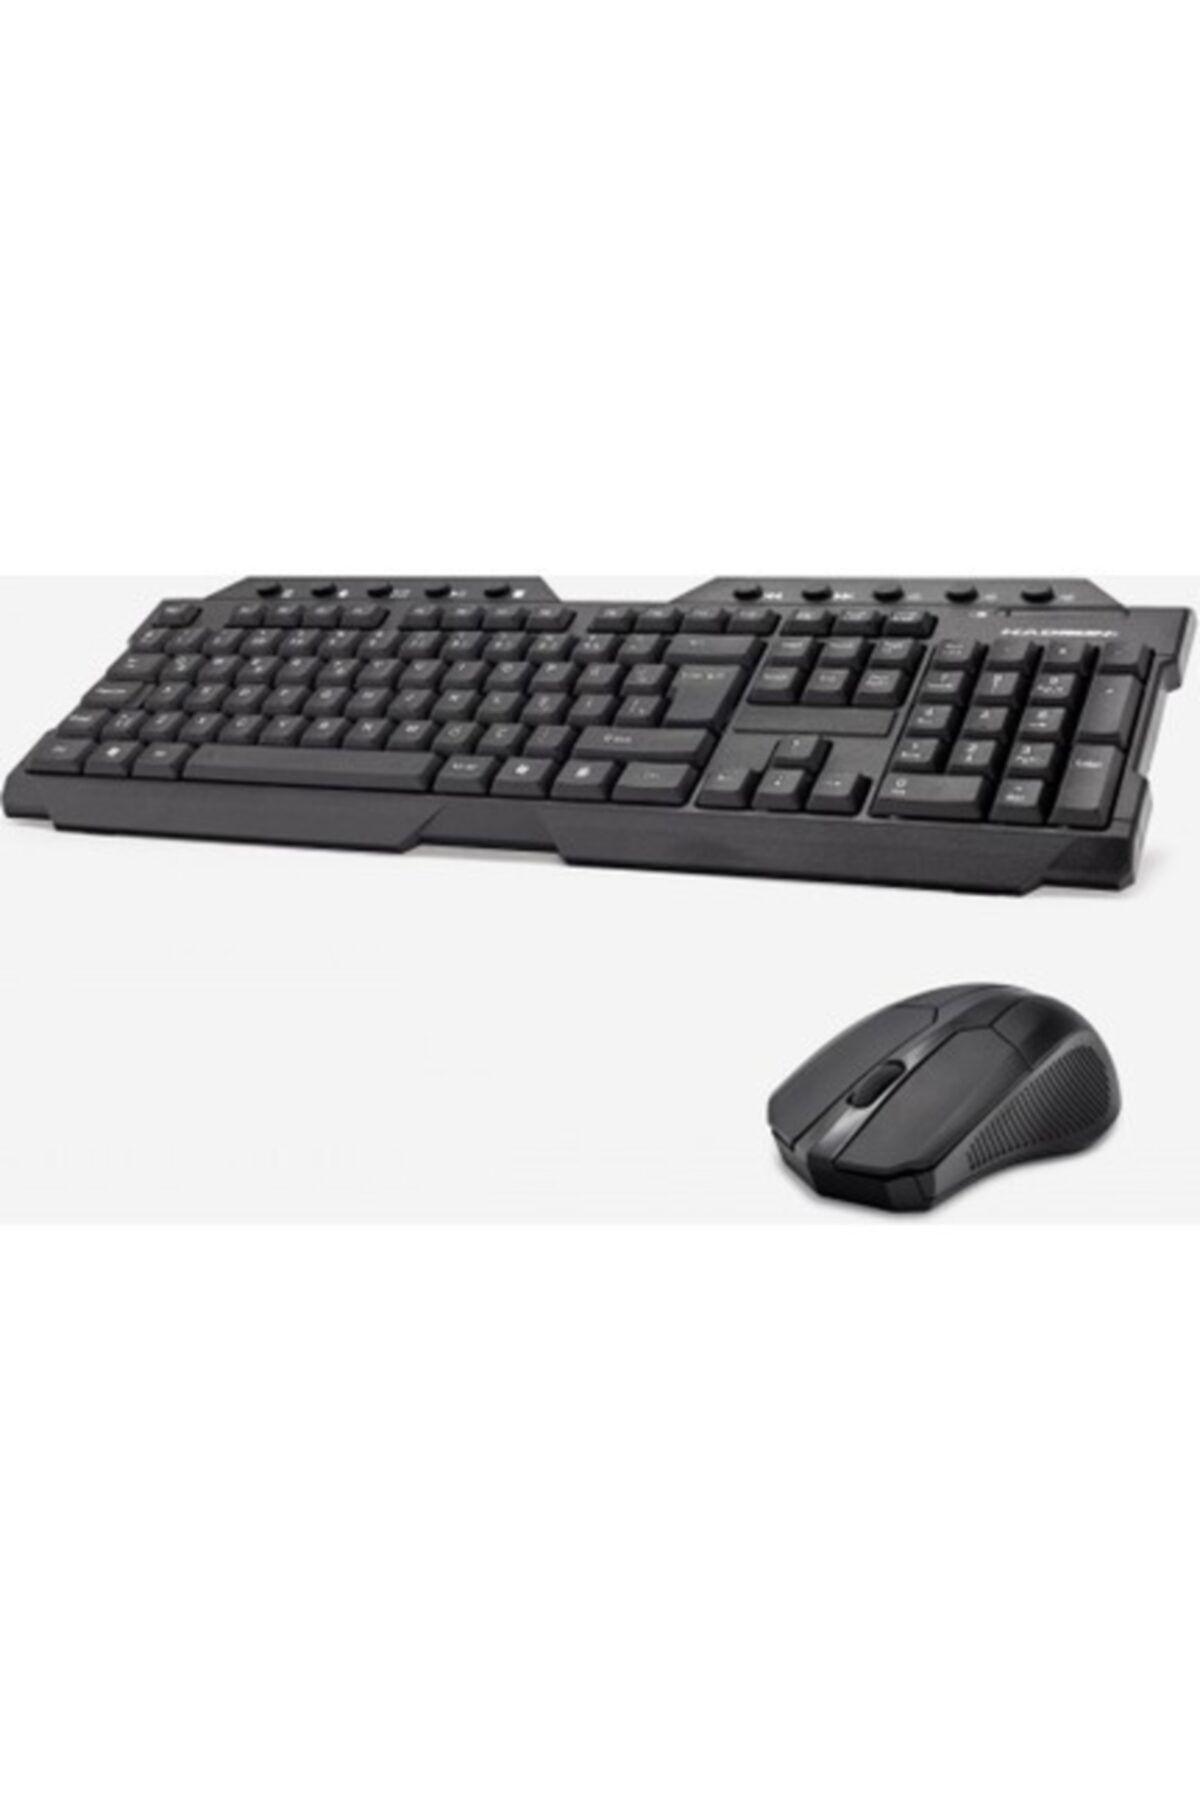 HADRON Hd834 Standart Siyah Tak Çalıştır Türkçe Q Klavye + Mouse Set